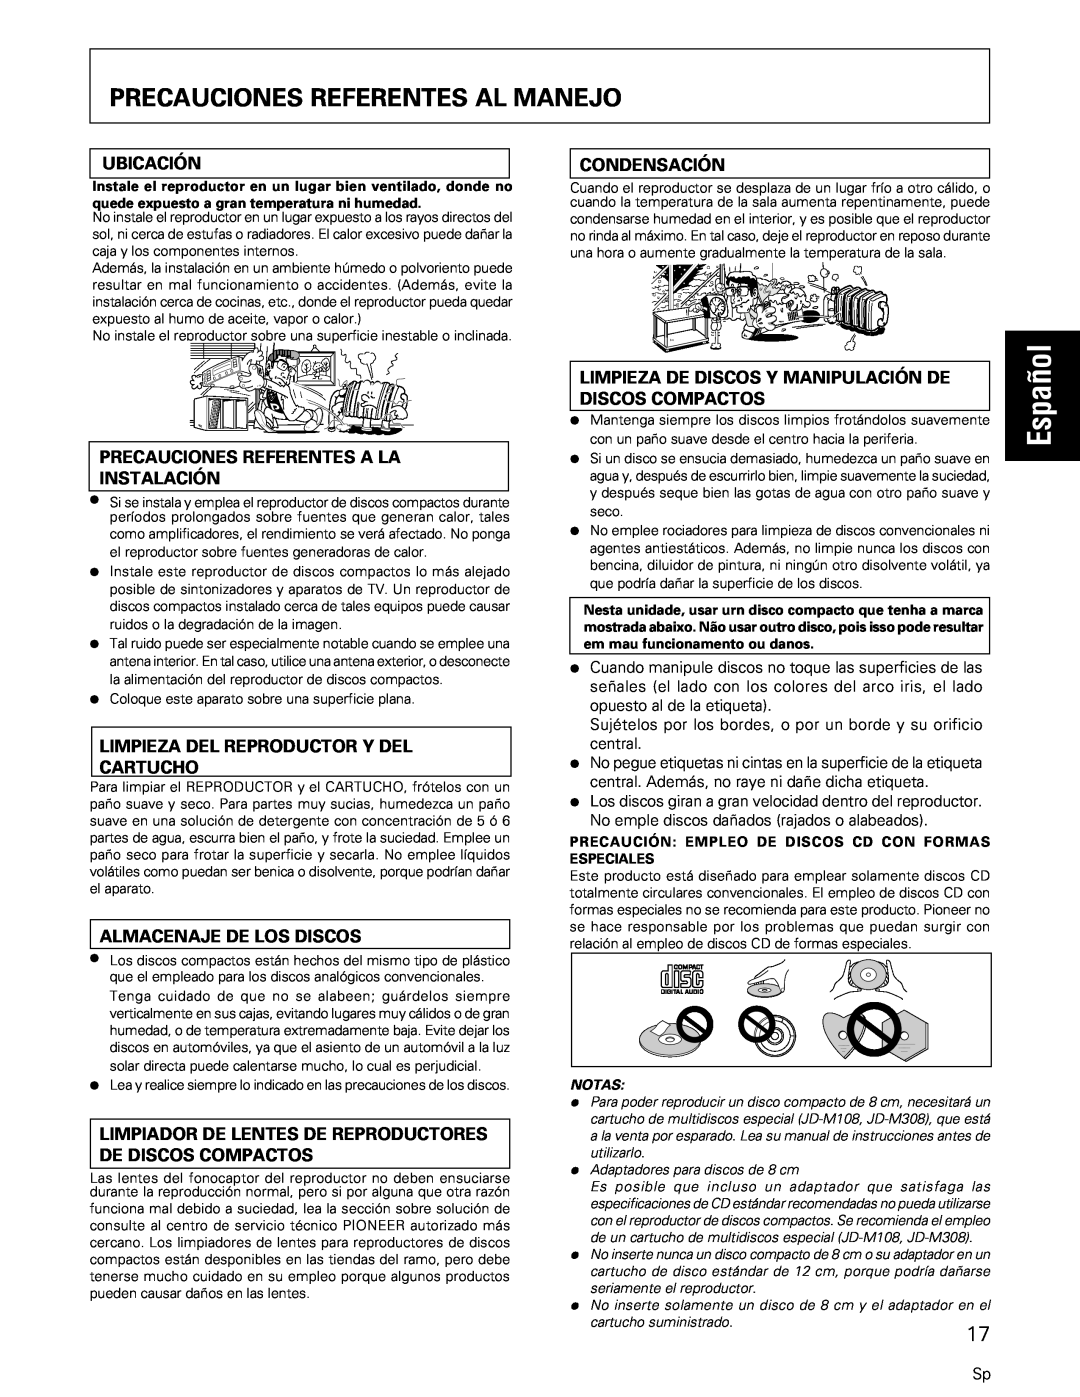 Pioneer PD-M427, PD-M407 Español, Precauciones Referentes Al Manejo, Ubicación, Condensación, Almacenaje De Los Discos 